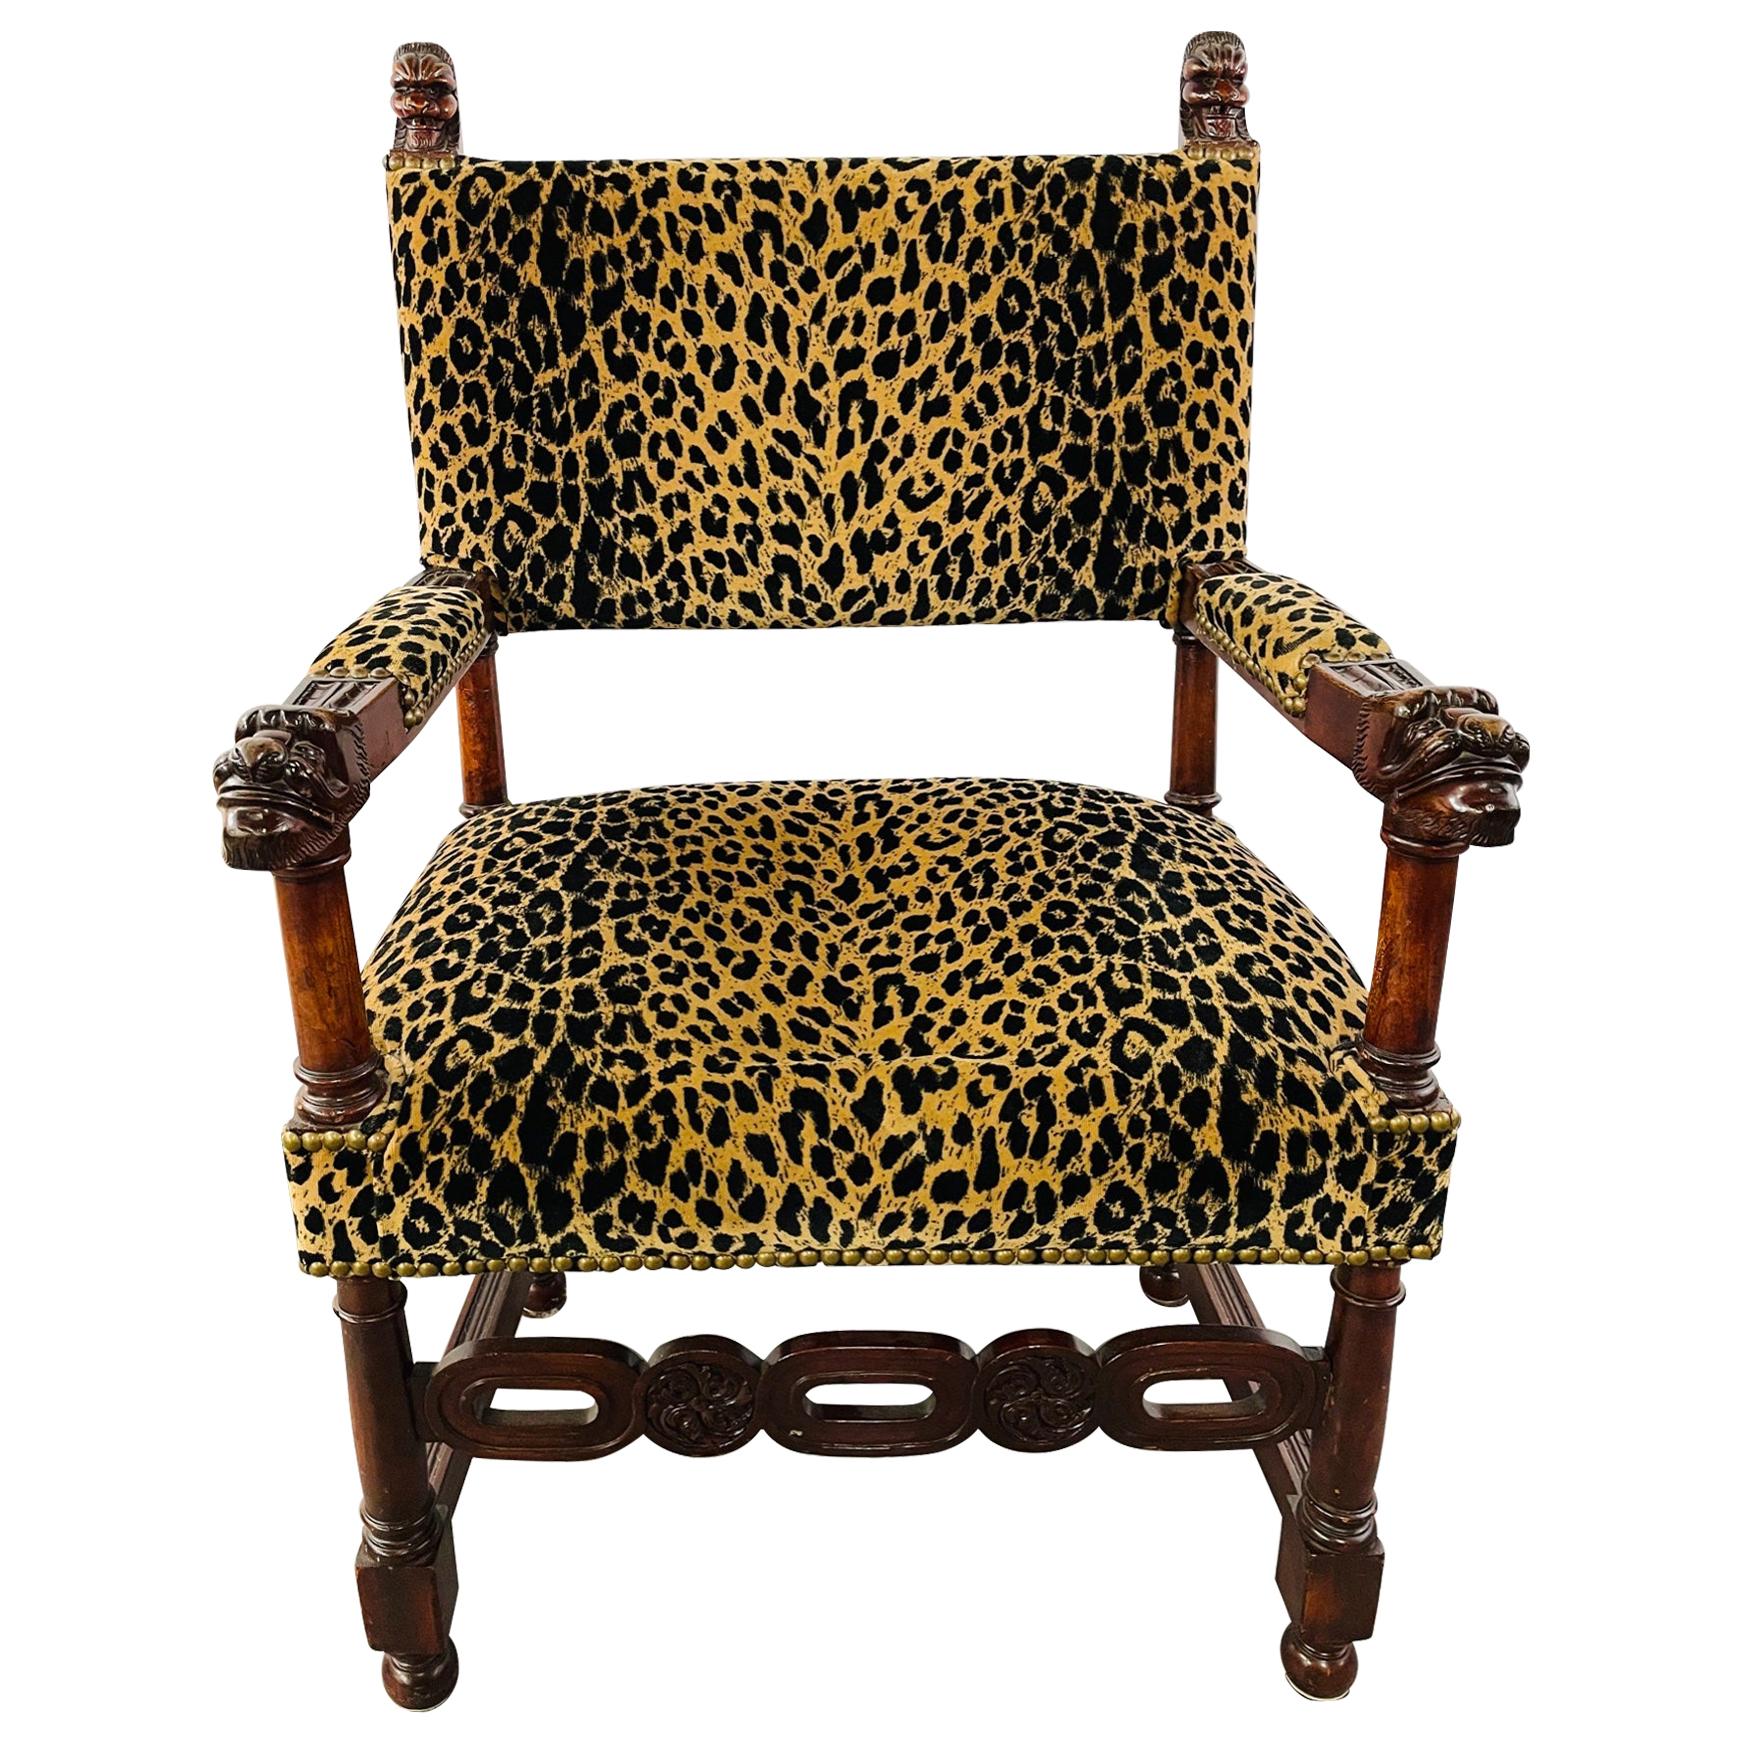 Chaise à accoudoir ou d'appoint en tissu léopard de la fin du 19e siècle, de style victorien Revive gothique